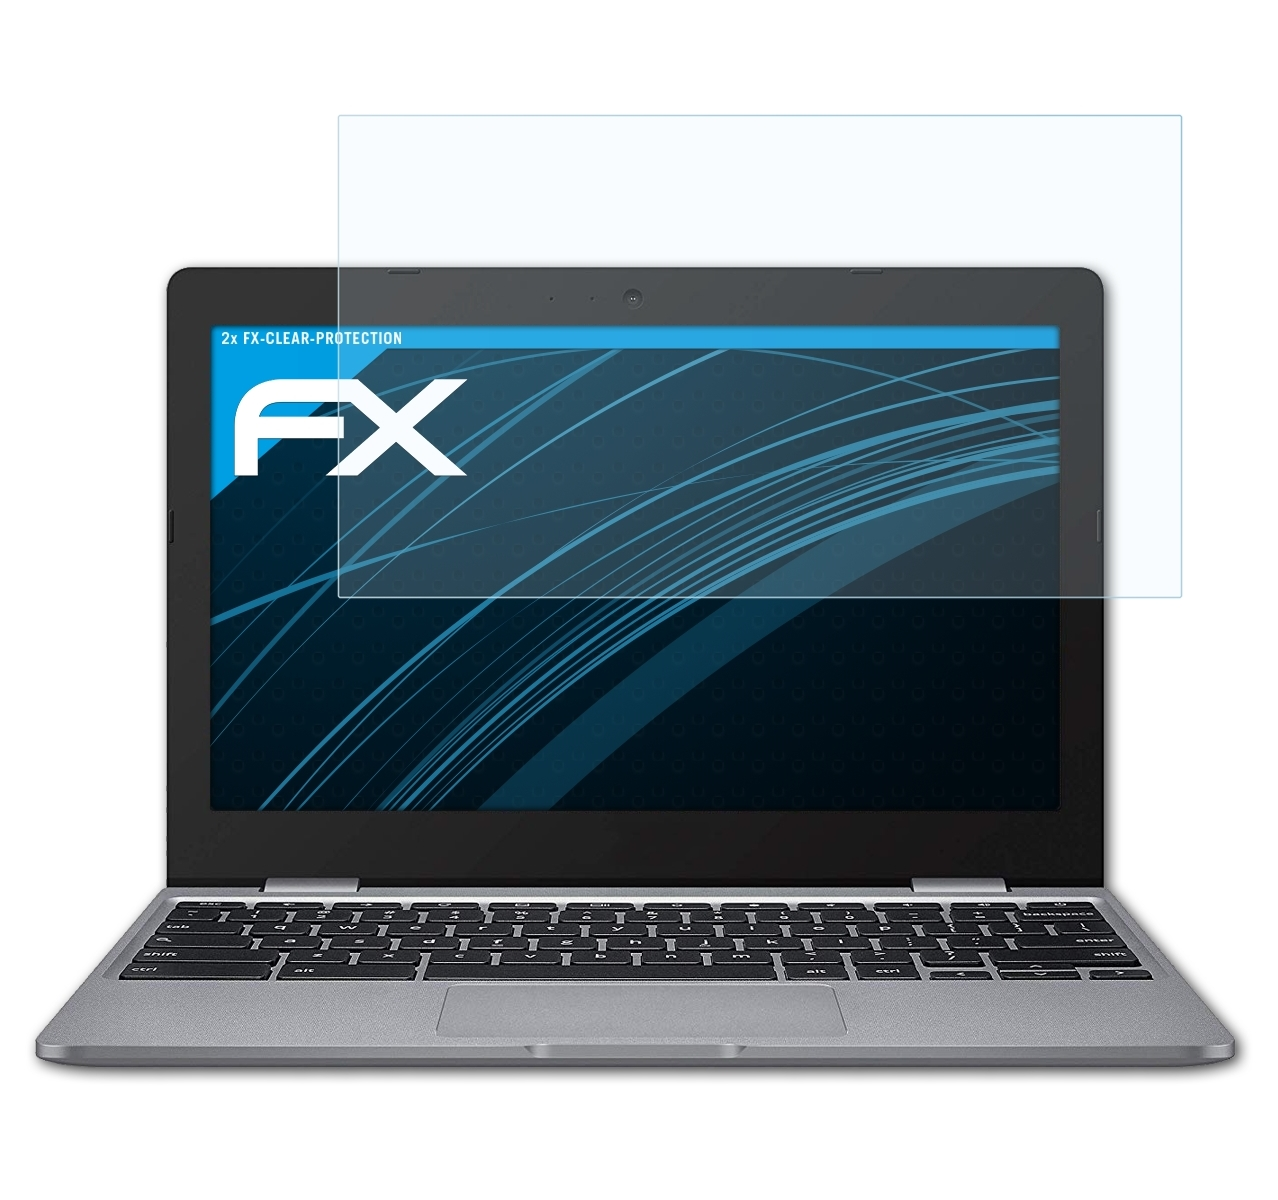 (C223NA)) C223 FX-Clear Asus 2x Displayschutz(für ATFOLIX Chromebook